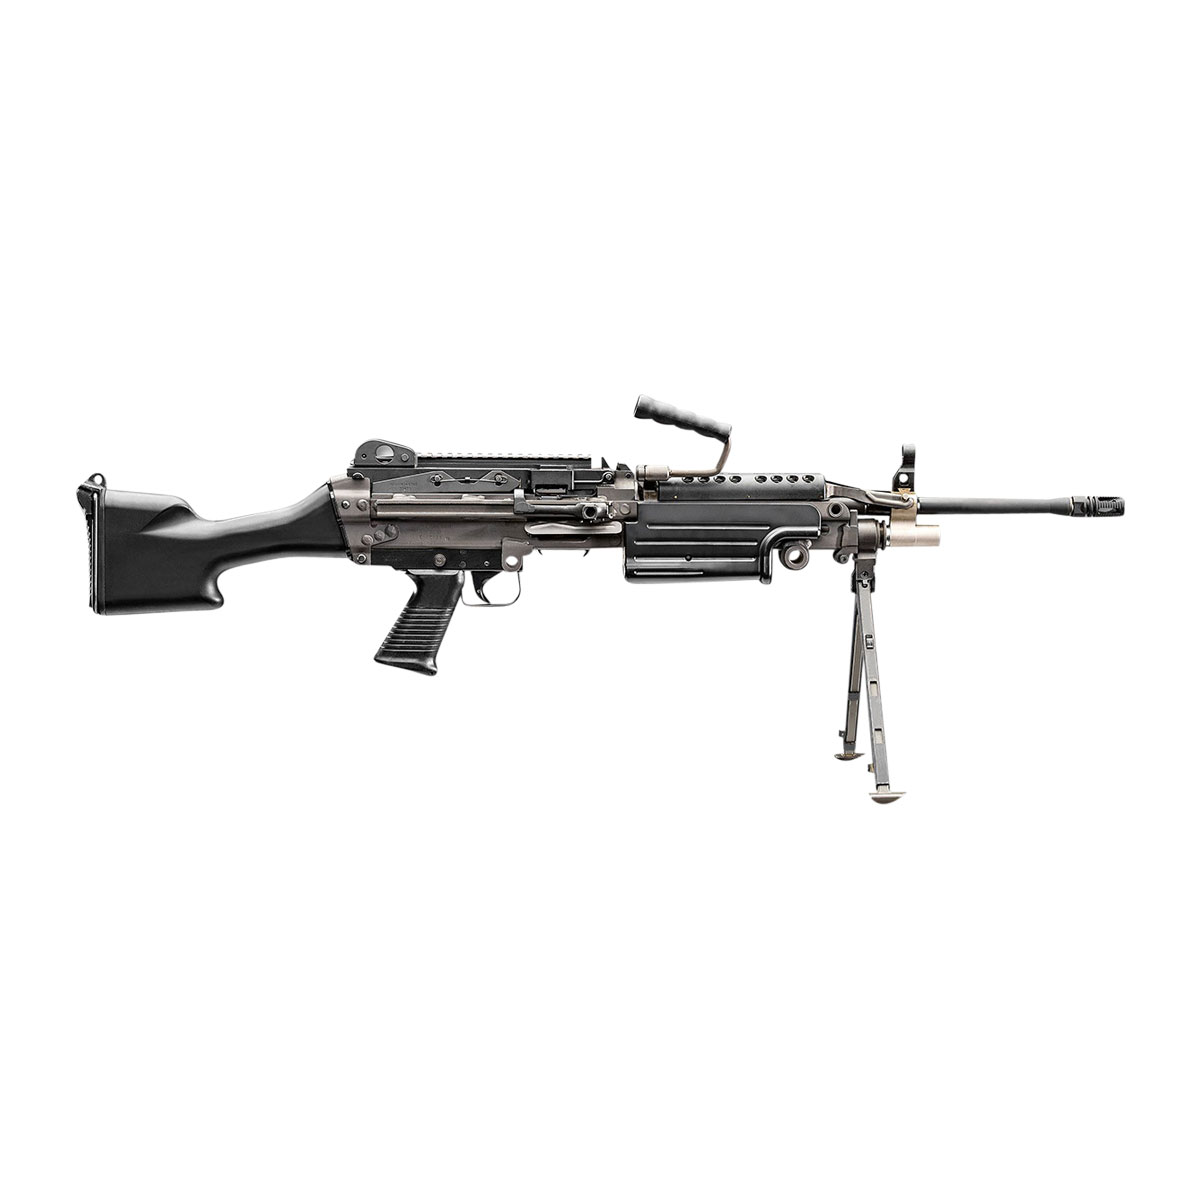 FN AMERICA LLC - M249S STANDARD 5.56X45MM SEMI-AUTO RIFLE